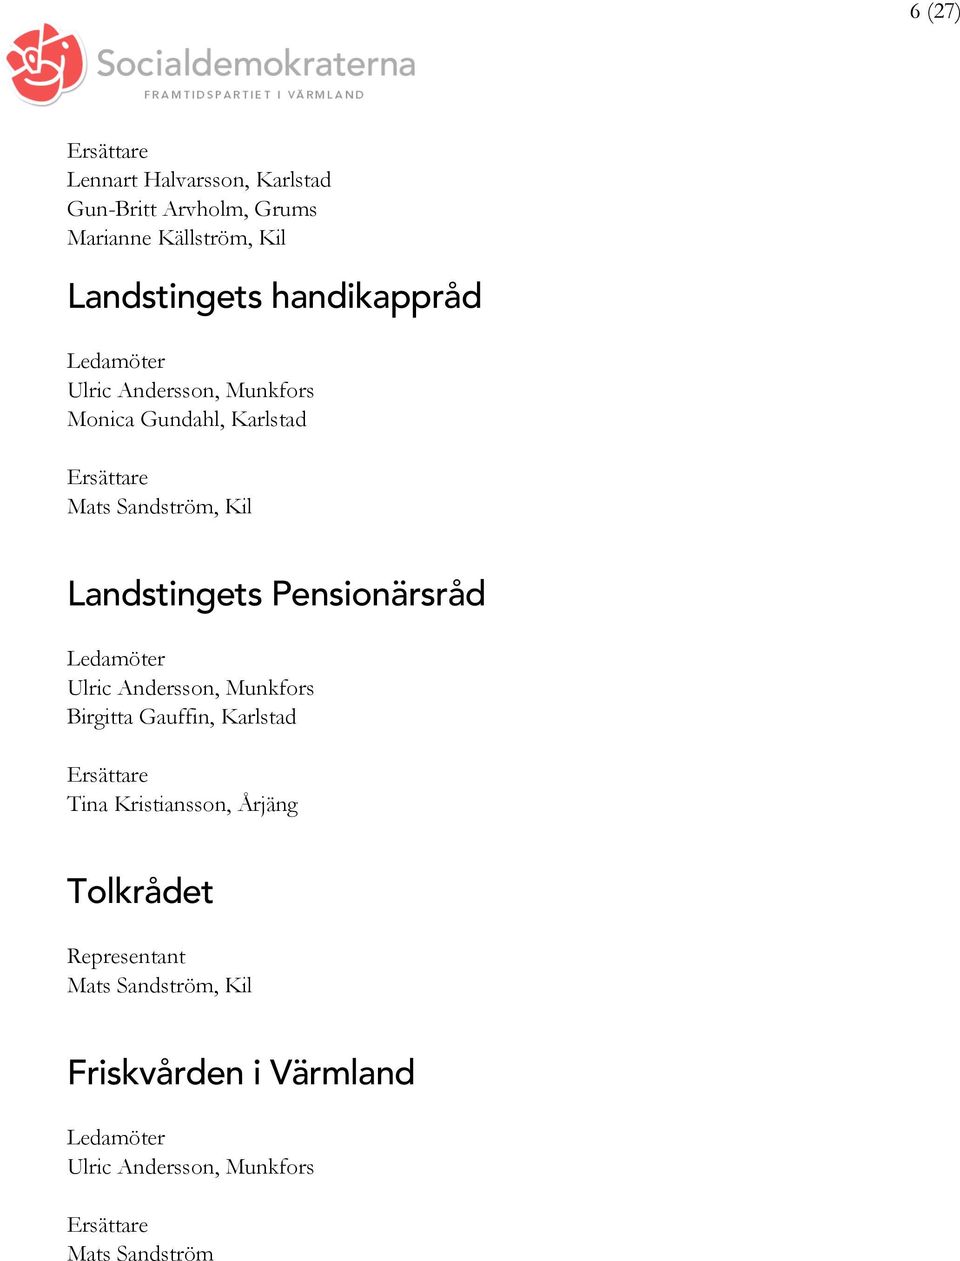 Landstingets Pensionärsråd Birgitta Gauffin, Karlstad Tina Kristiansson,